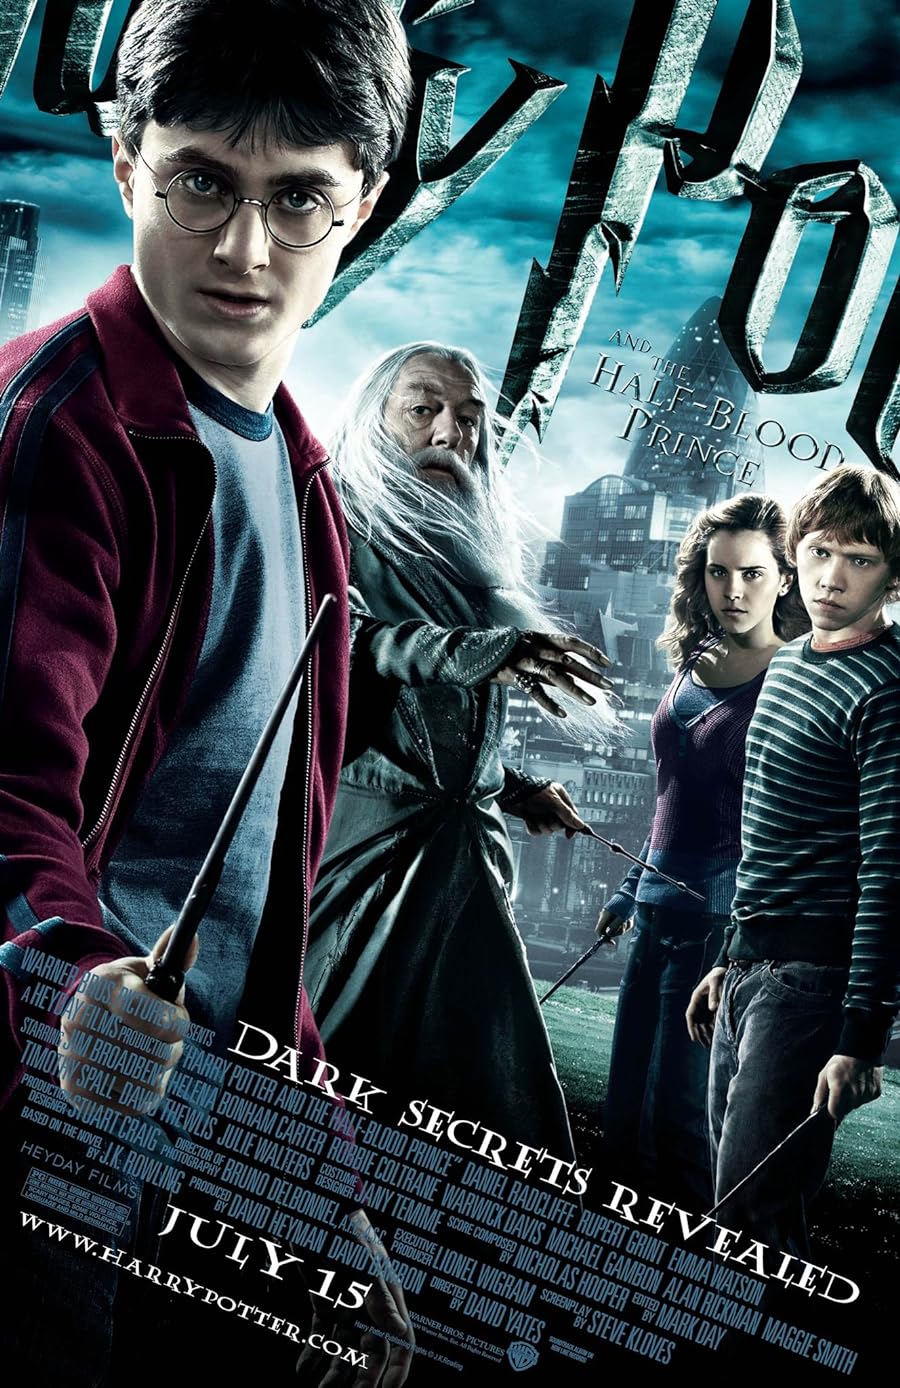 دانلود فیلم هری پاتر و شاهزاده دورگه Harry Potter and the Half-Blood Prince 2009